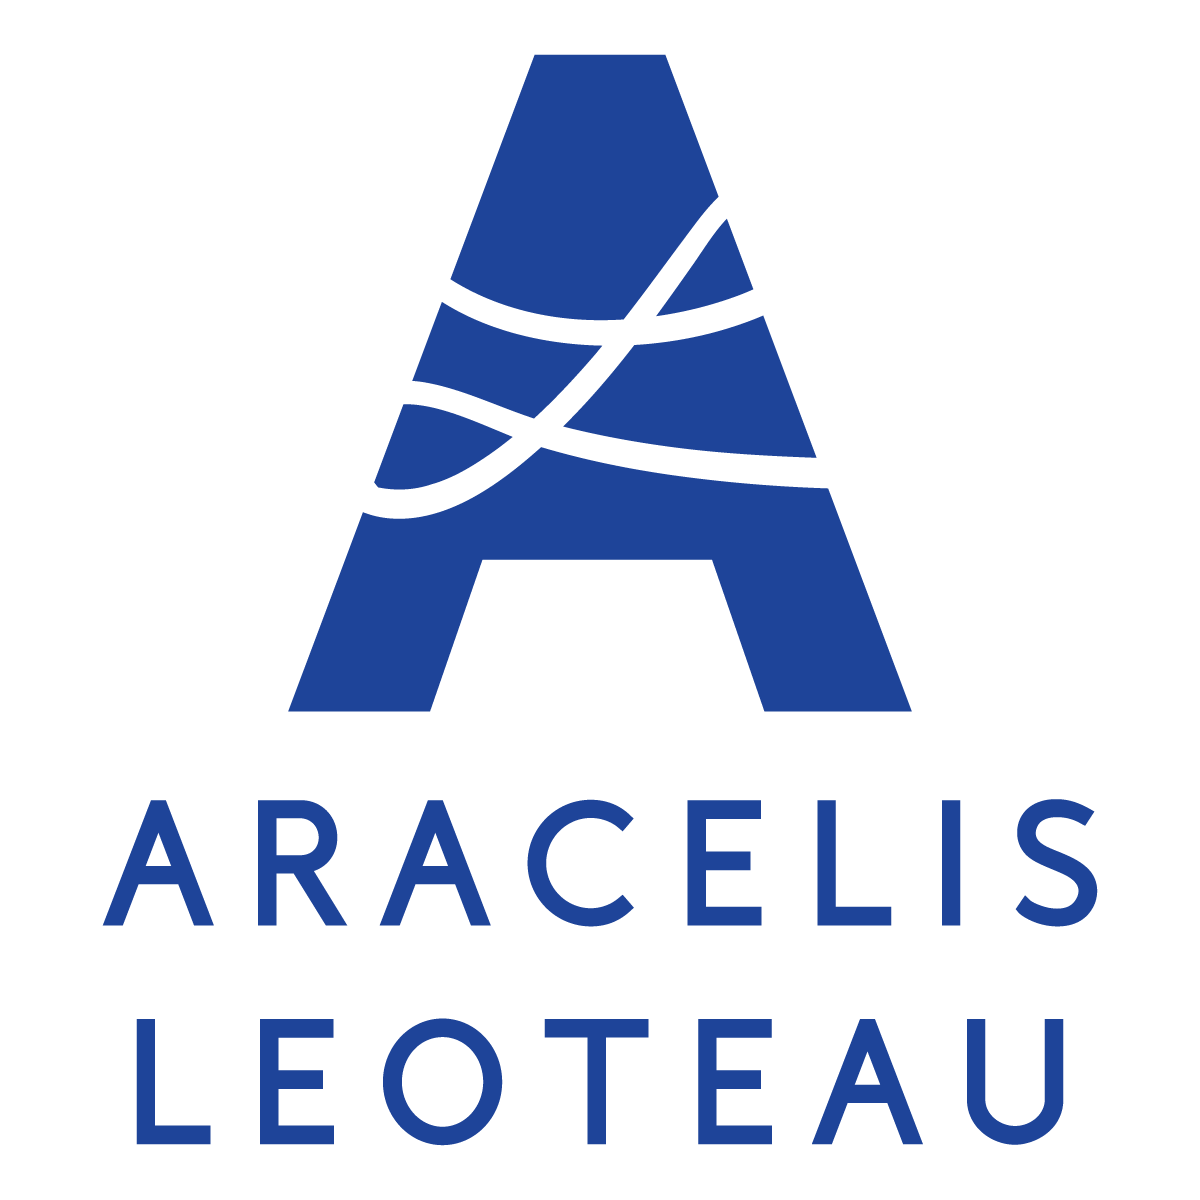 Aracelis Leoteau